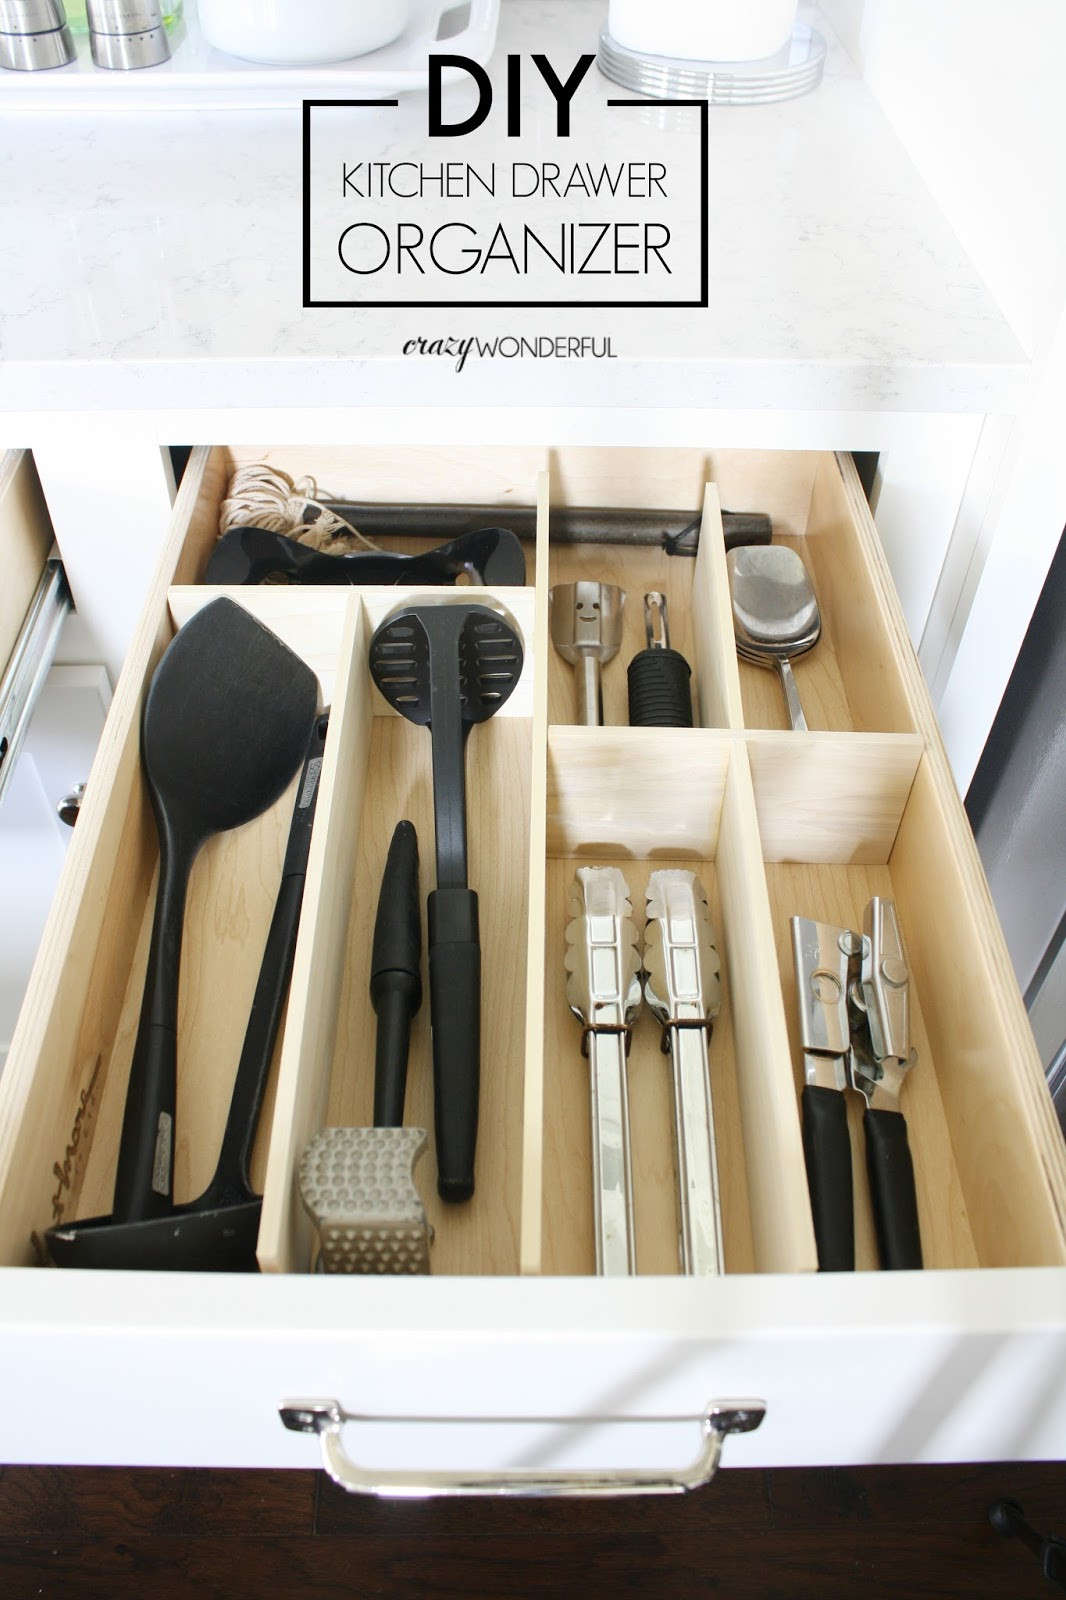 Kitchen Drawer Organizer DIY
 DIY custom kitchen drawer organizers Crazy Wonderful